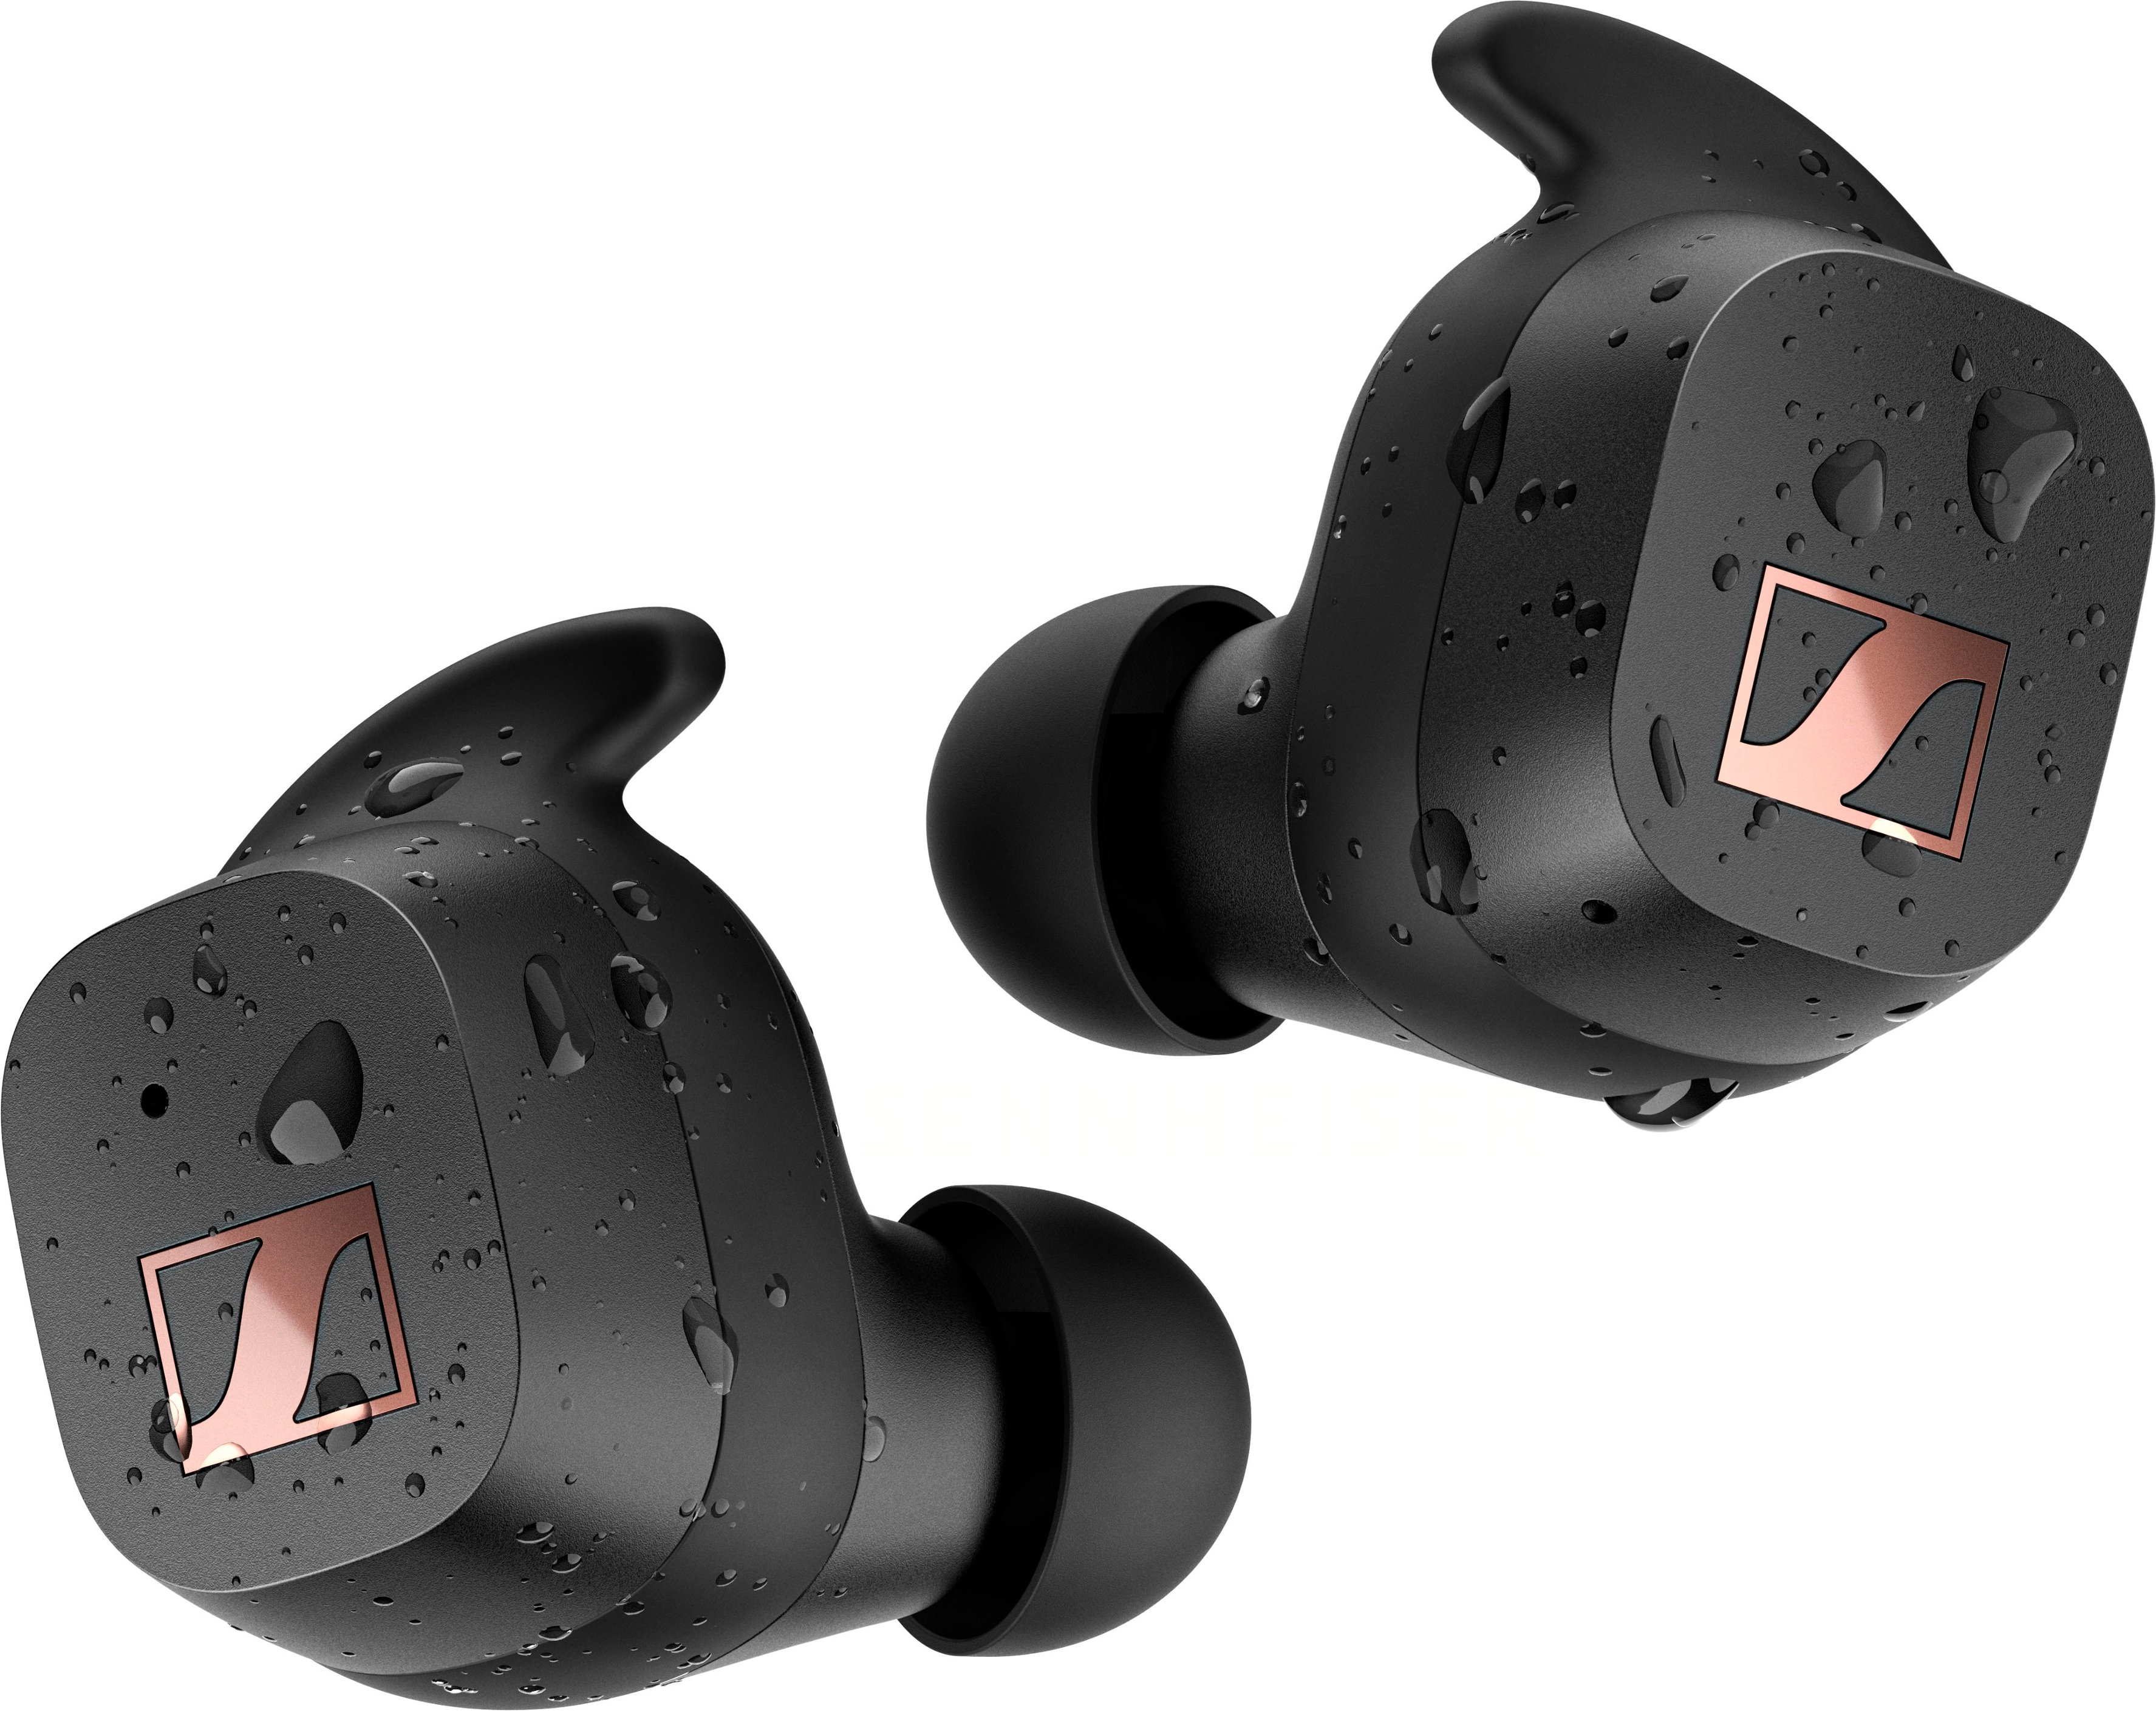 Sennheiser SPORT True Wireless In-Ear Buy Best - Headphones Black Sport CX200TW1